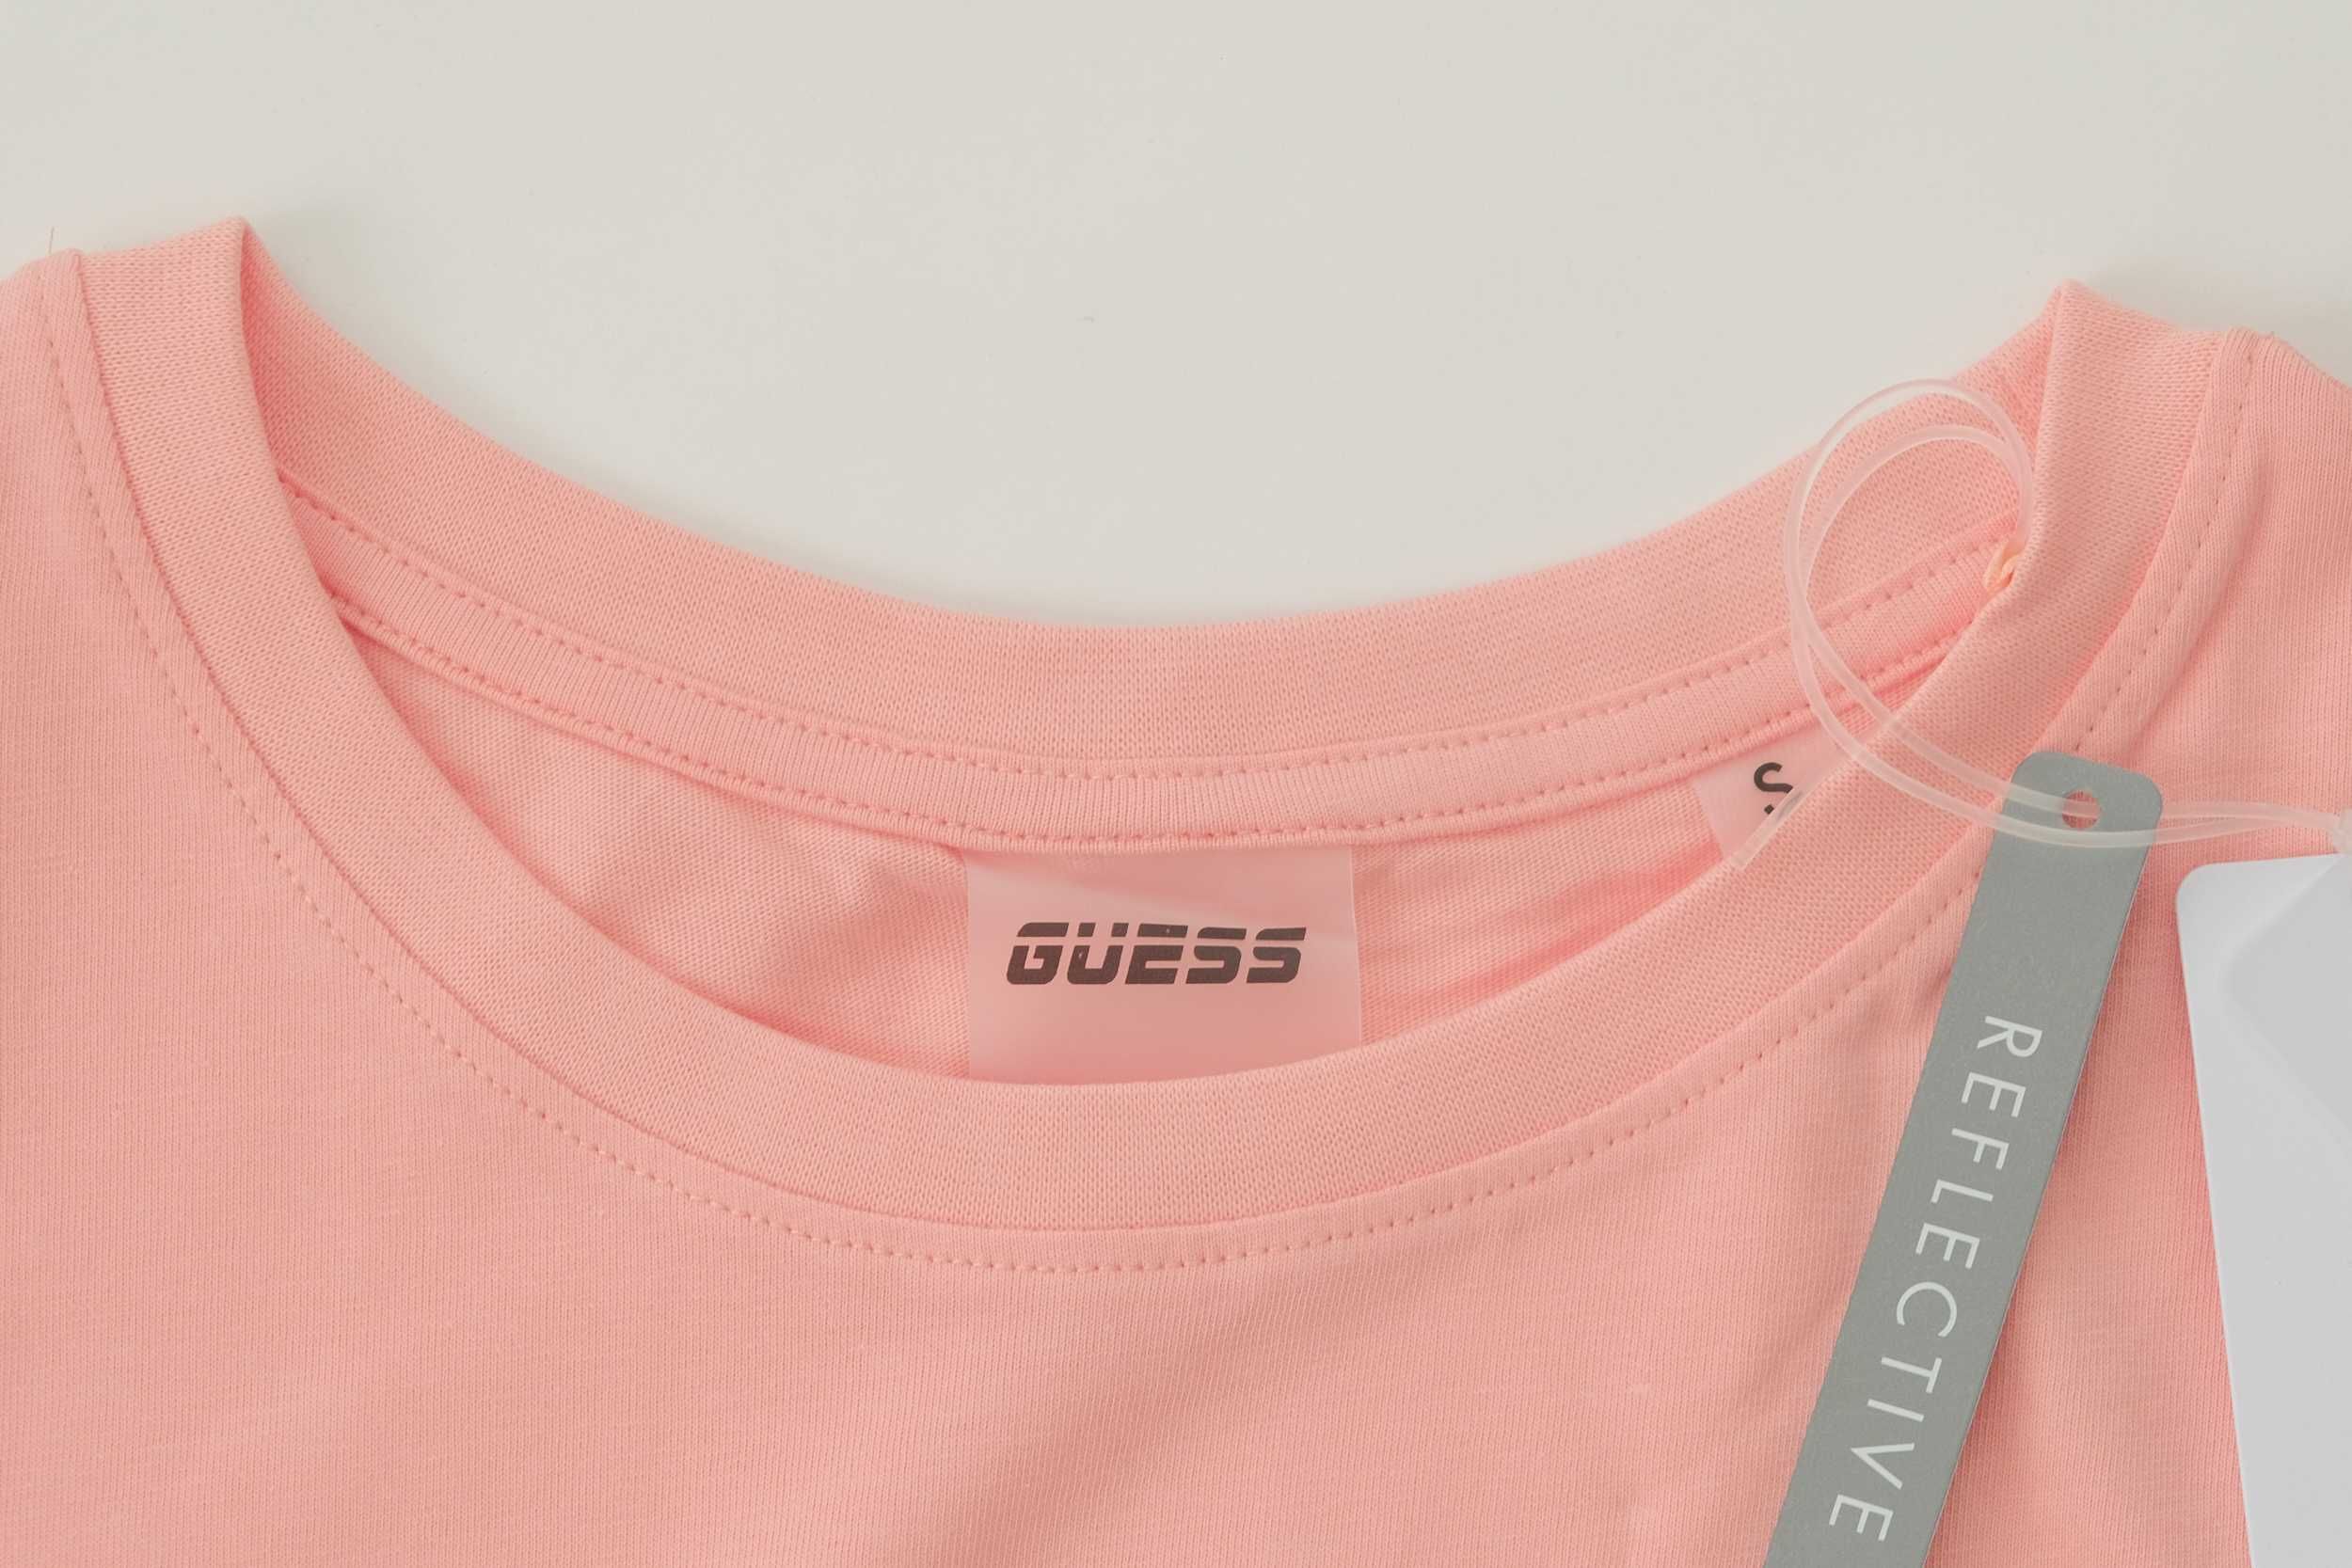 ПРОМО GUESS XS/S/M-Оригинална розова дамска тениска с надпис